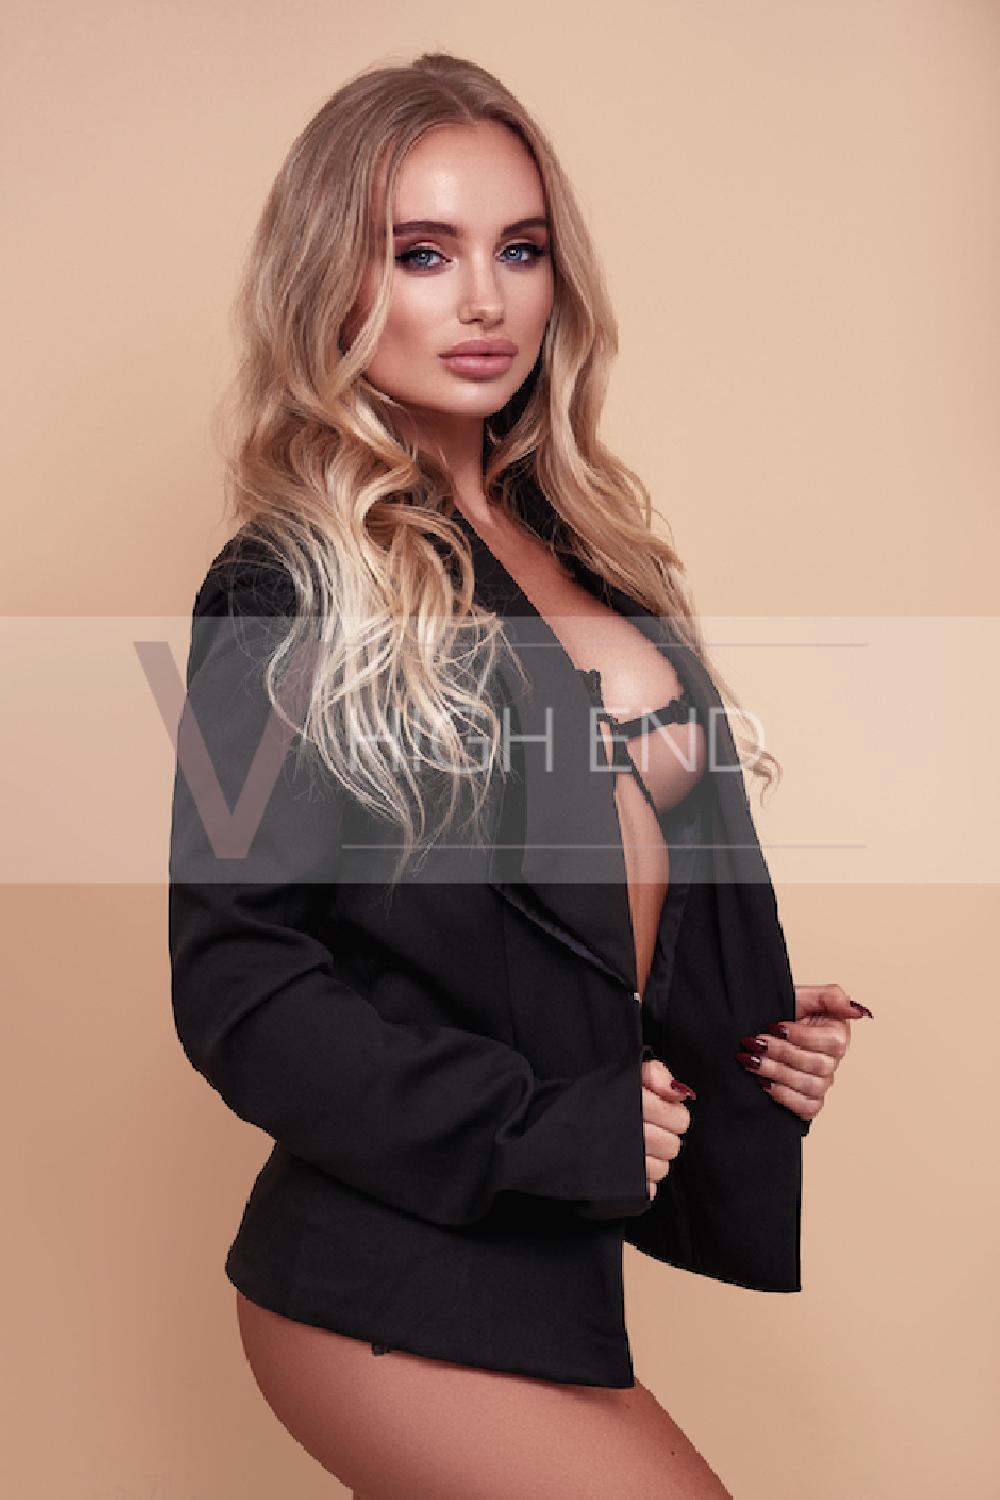 Glamour model Evelina is wearing smart black jacket